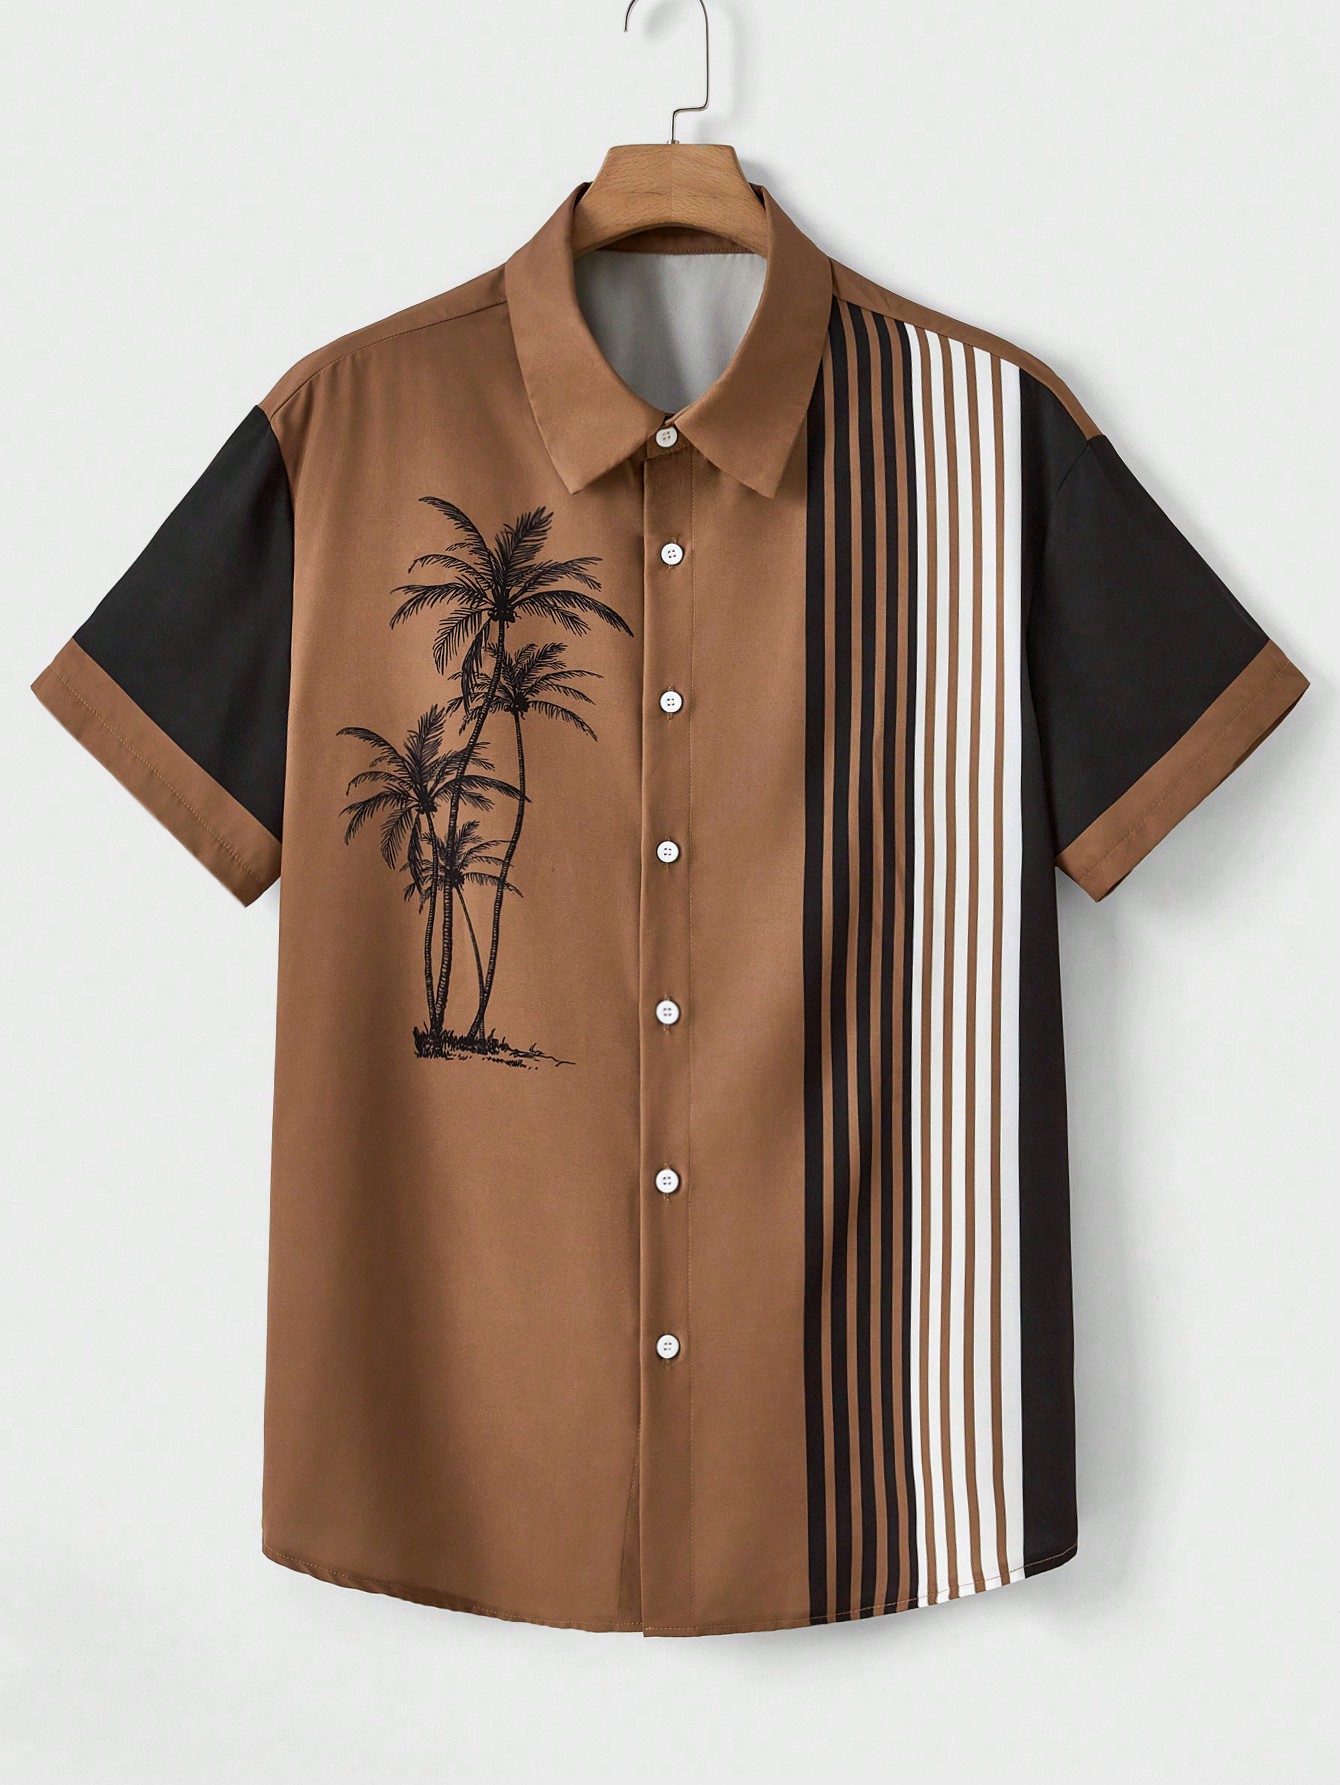 Мужская полосатая рубашка в стиле пэчворк Manfinity RSRT больших размеров с цветными блоками и принтом кокосовой пальмы, многоцветный